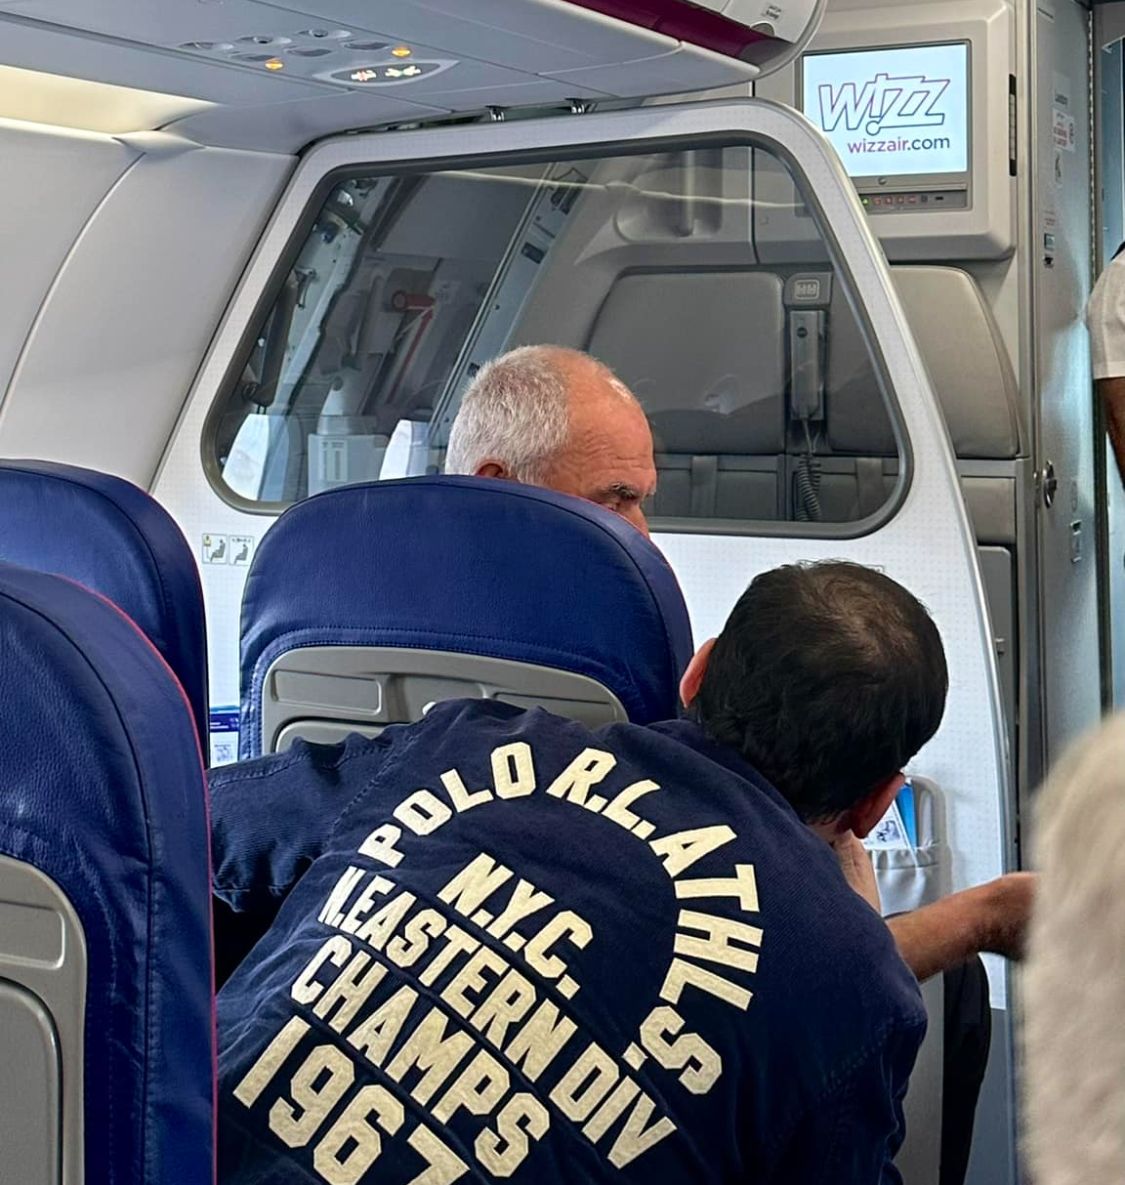 Ինքնաթիռում լարված իրավիճակ էր, միջամտեց քաղաքապետ Տիգրան Ավինյանը. Կամո Թովմասյանը մանրամասներ է ներկայացրել WizzAir-ի թռիչքից